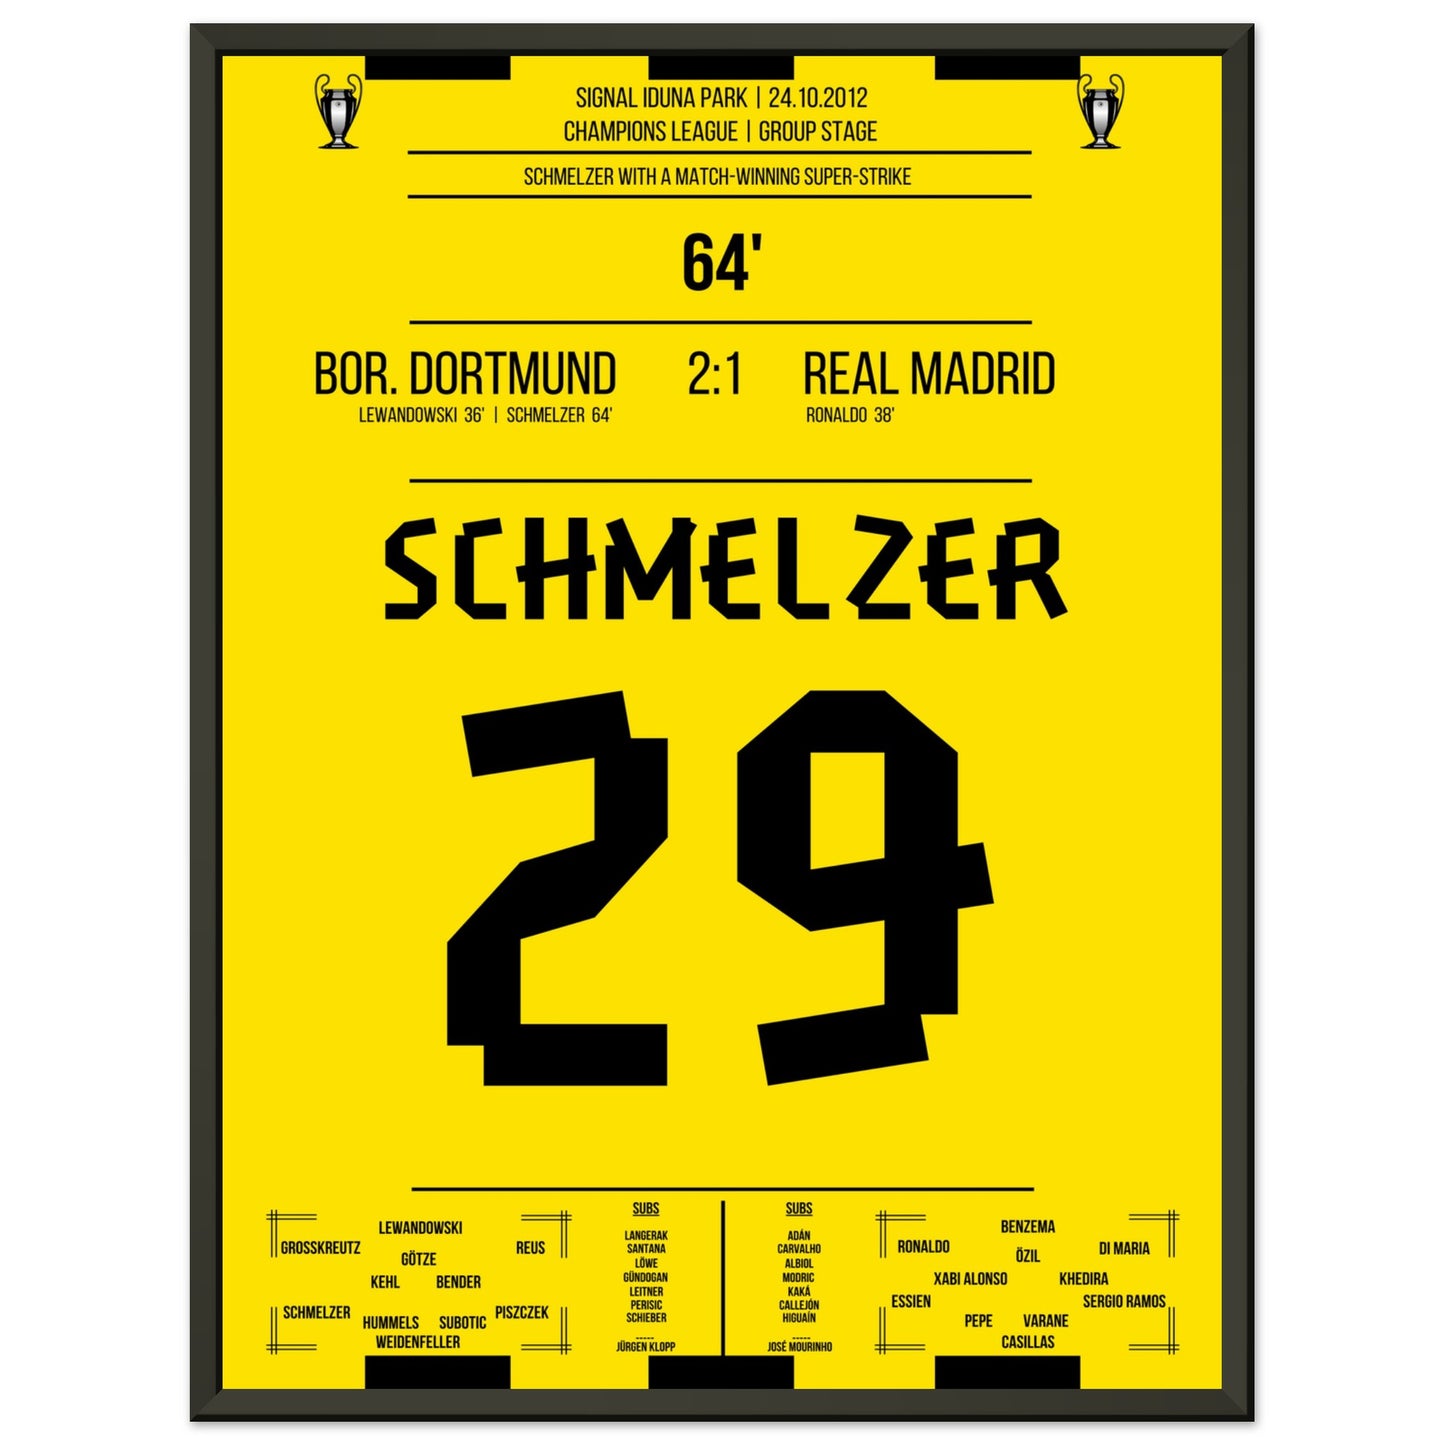 Schmelzer's linke Klebe gegen Real in der Champions League 2012